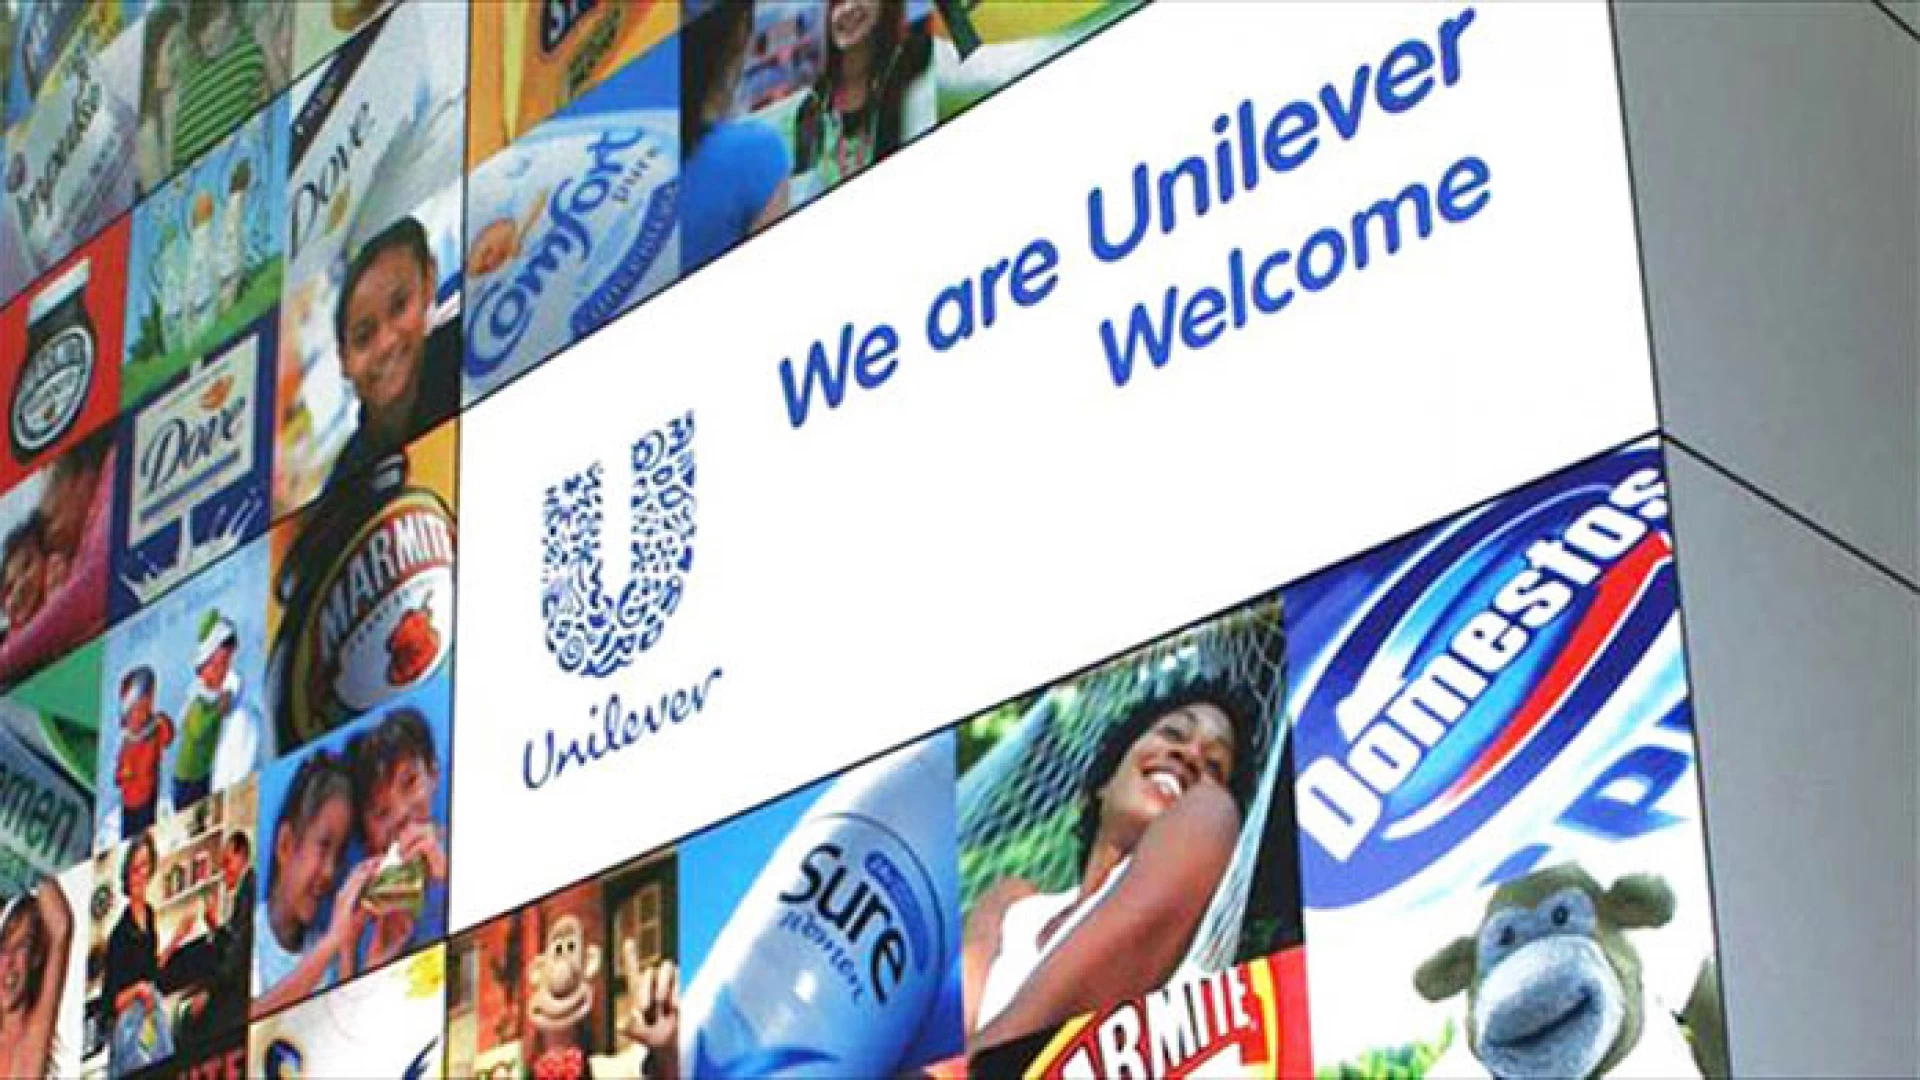 Comitato Indotto Unilever Pozzilli esprime tutte le sue preoccupazioni sui piani prospettati ai lavoratori.